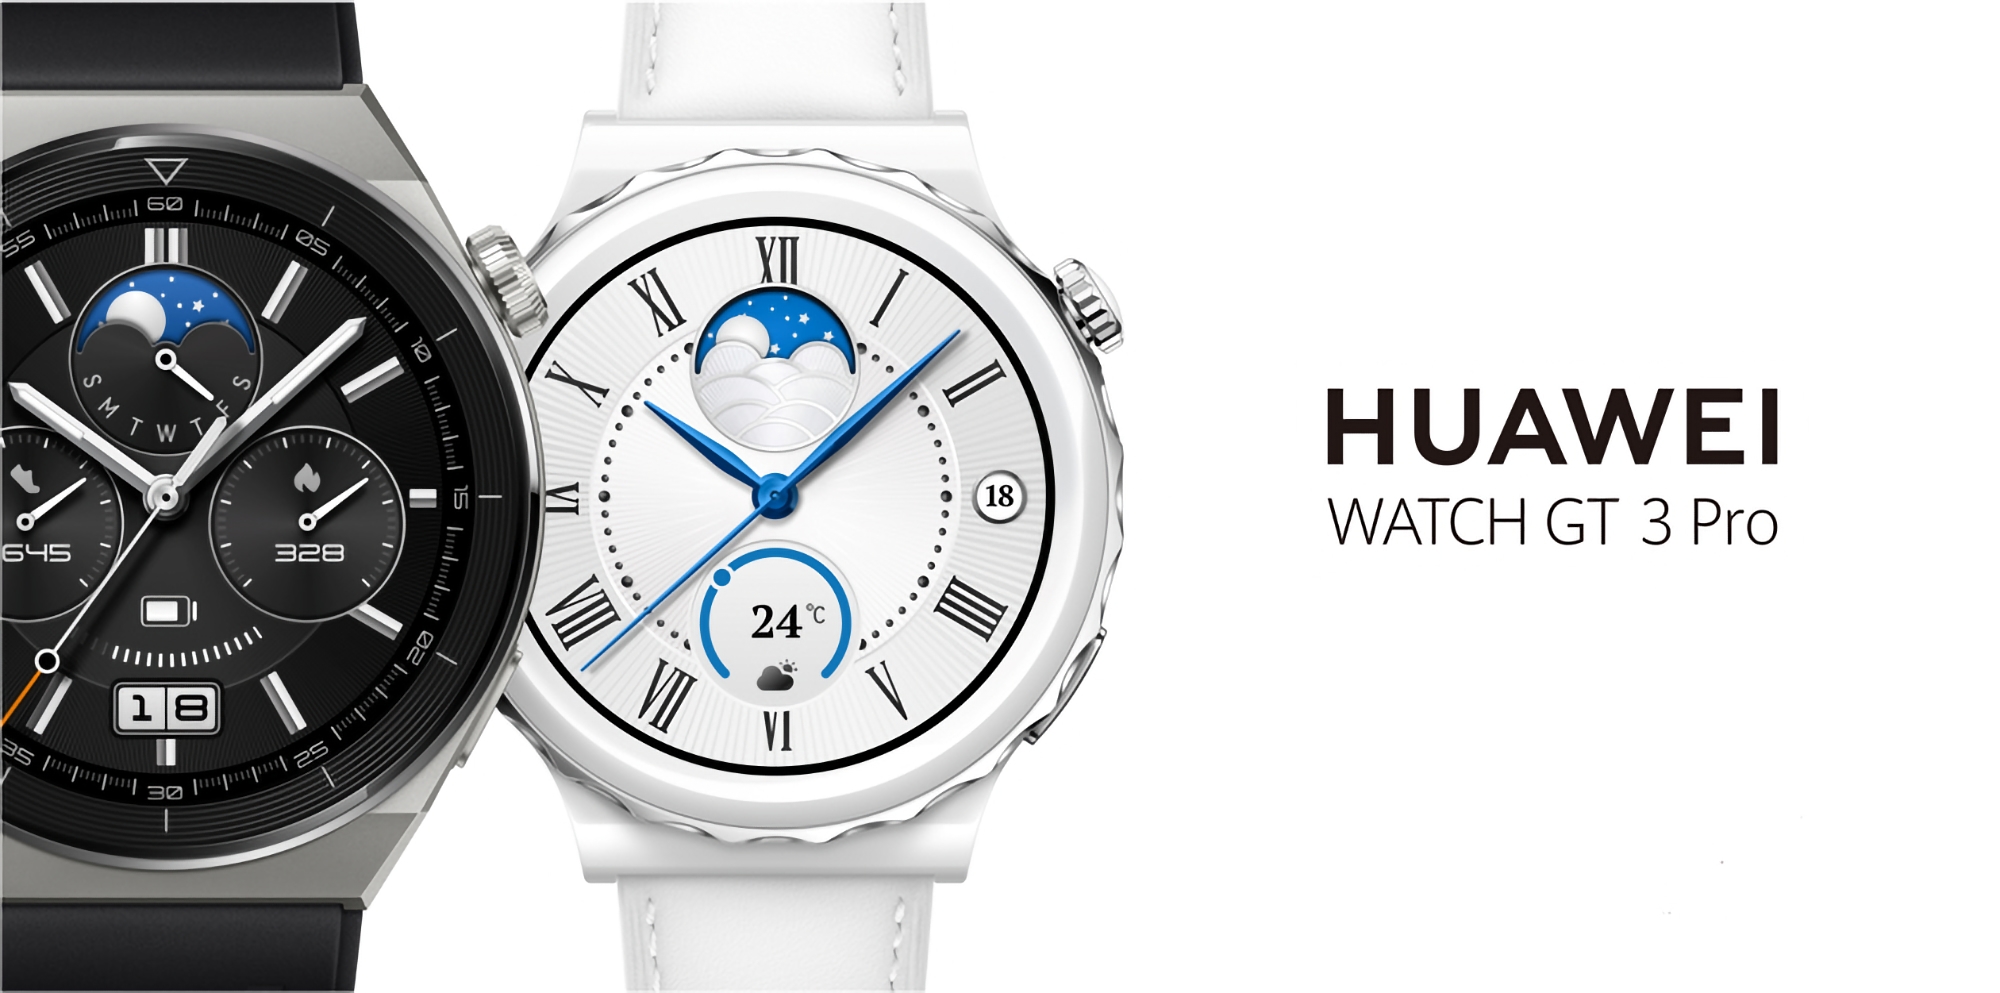 Les utilisateurs mondiaux de la Huawei Watch GT 3 Pro ont commencé à recevoir la mise à jour HarmonyOS 4